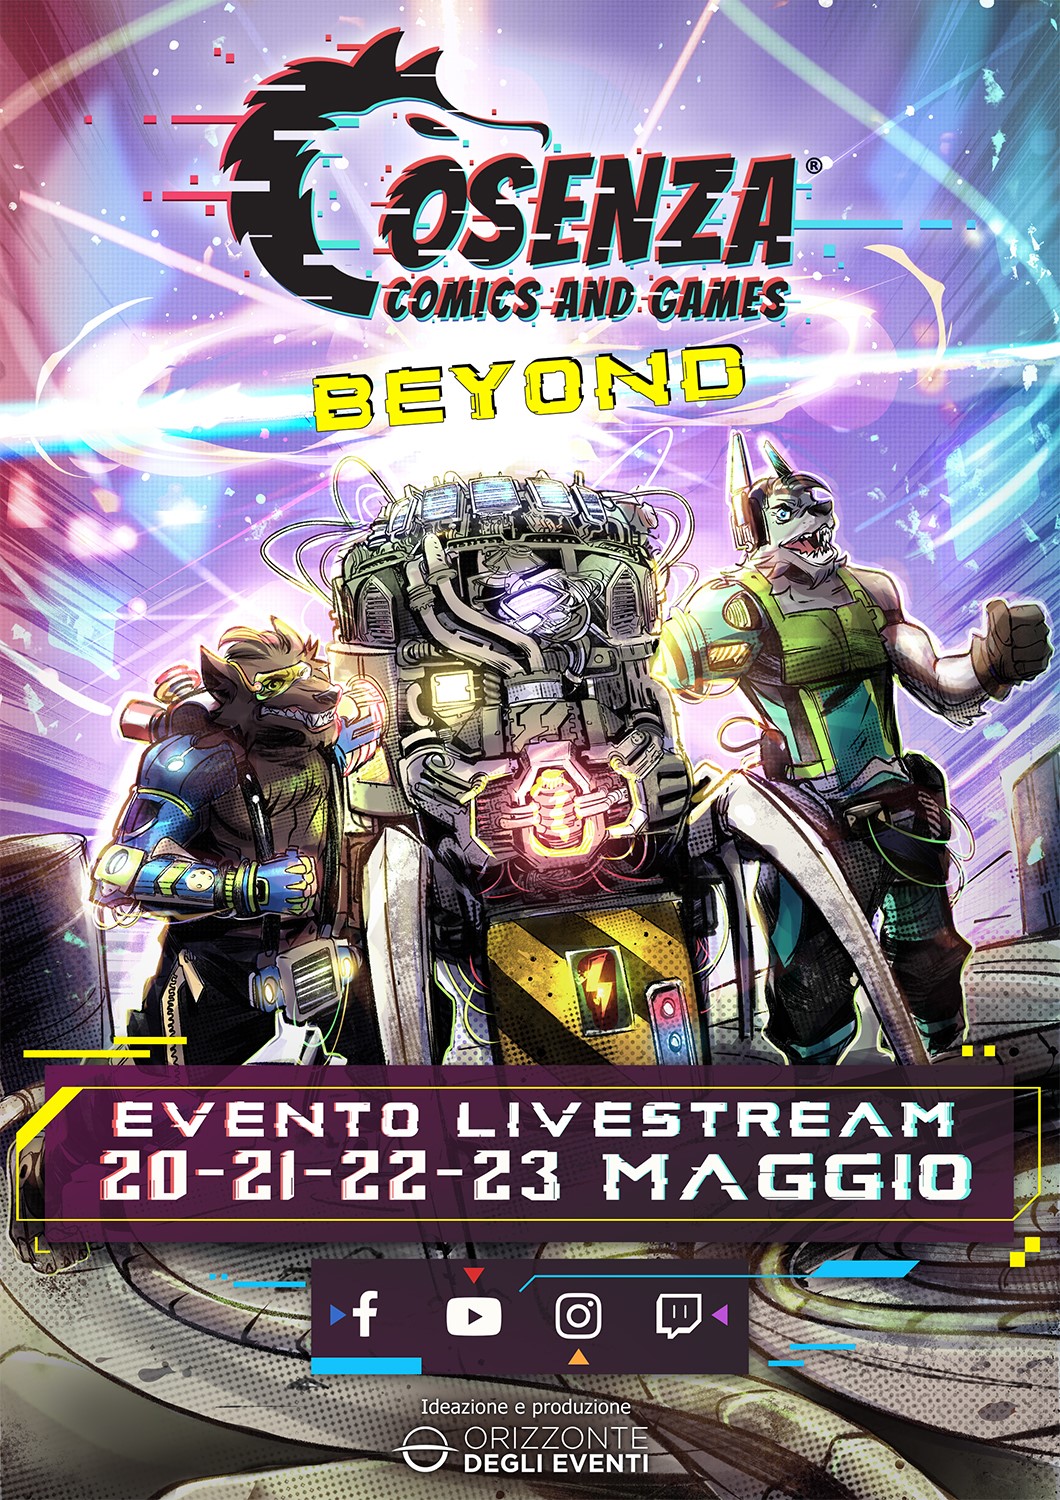 La locandina di Cosenza Comics: Beyond, l’edizione online del 2021.